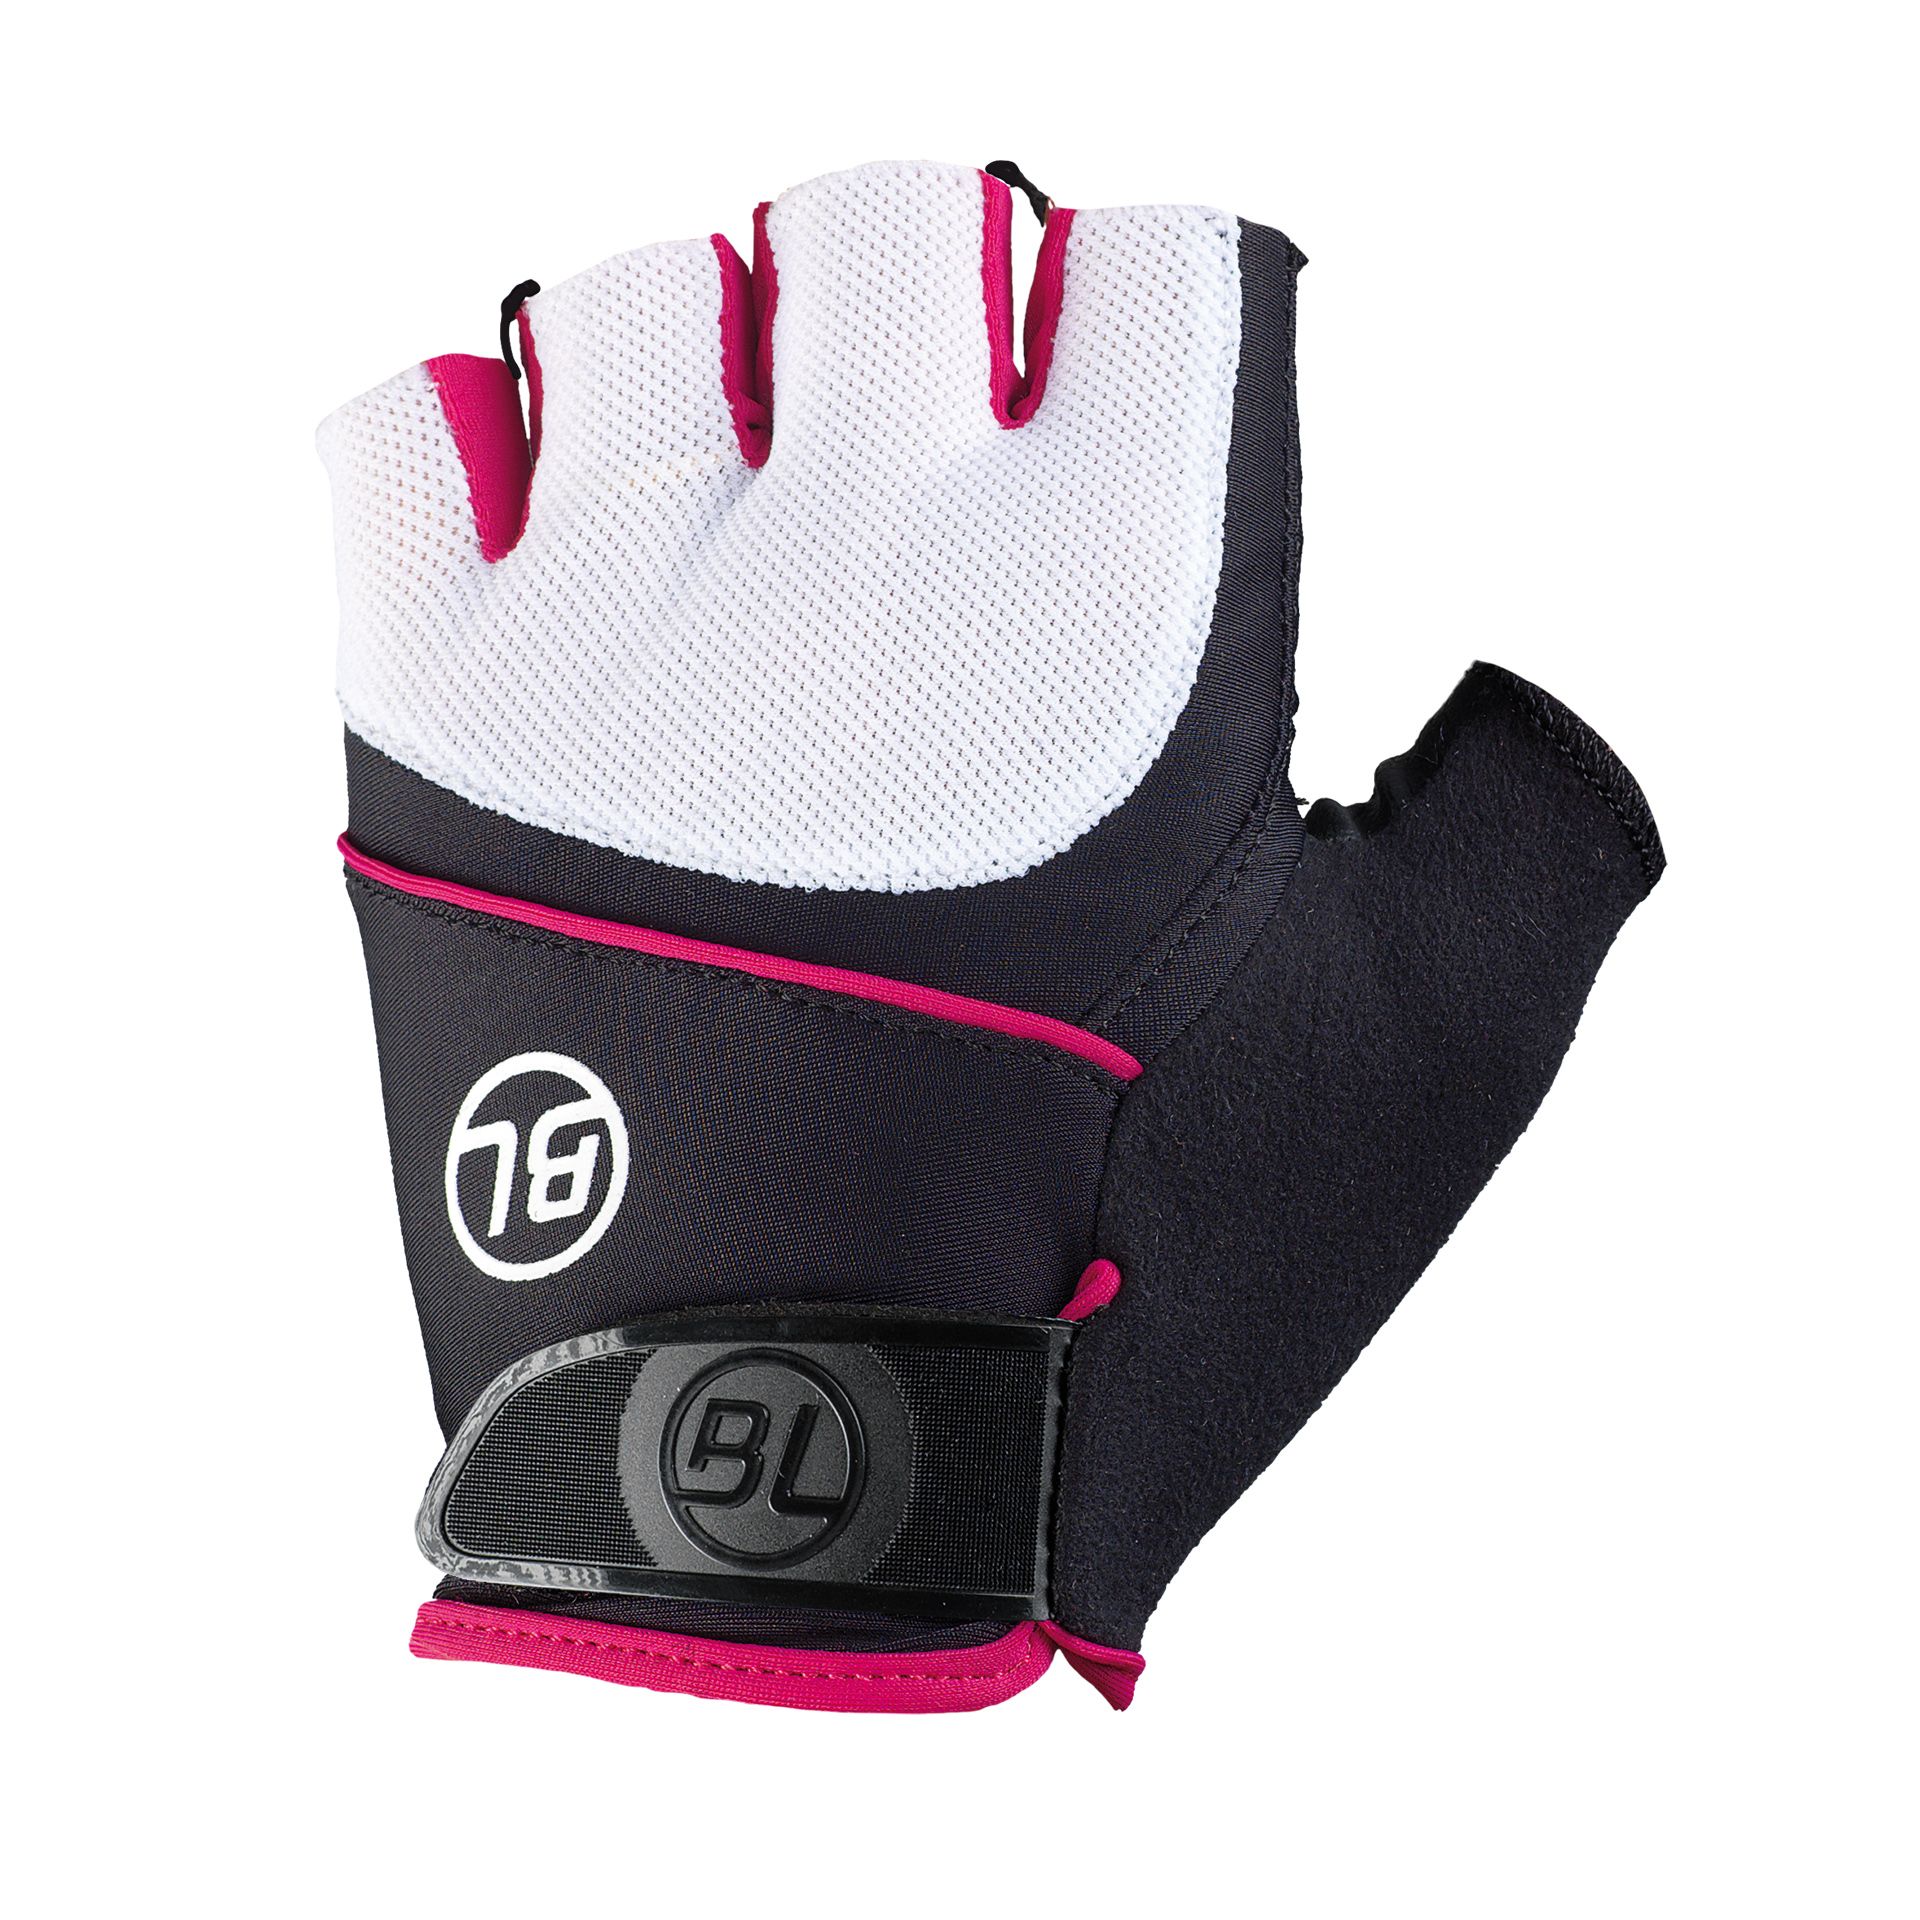 Перчатки Bicycle Line GUIDA, женские, без пальцев, черно-бело-розовые, размер S